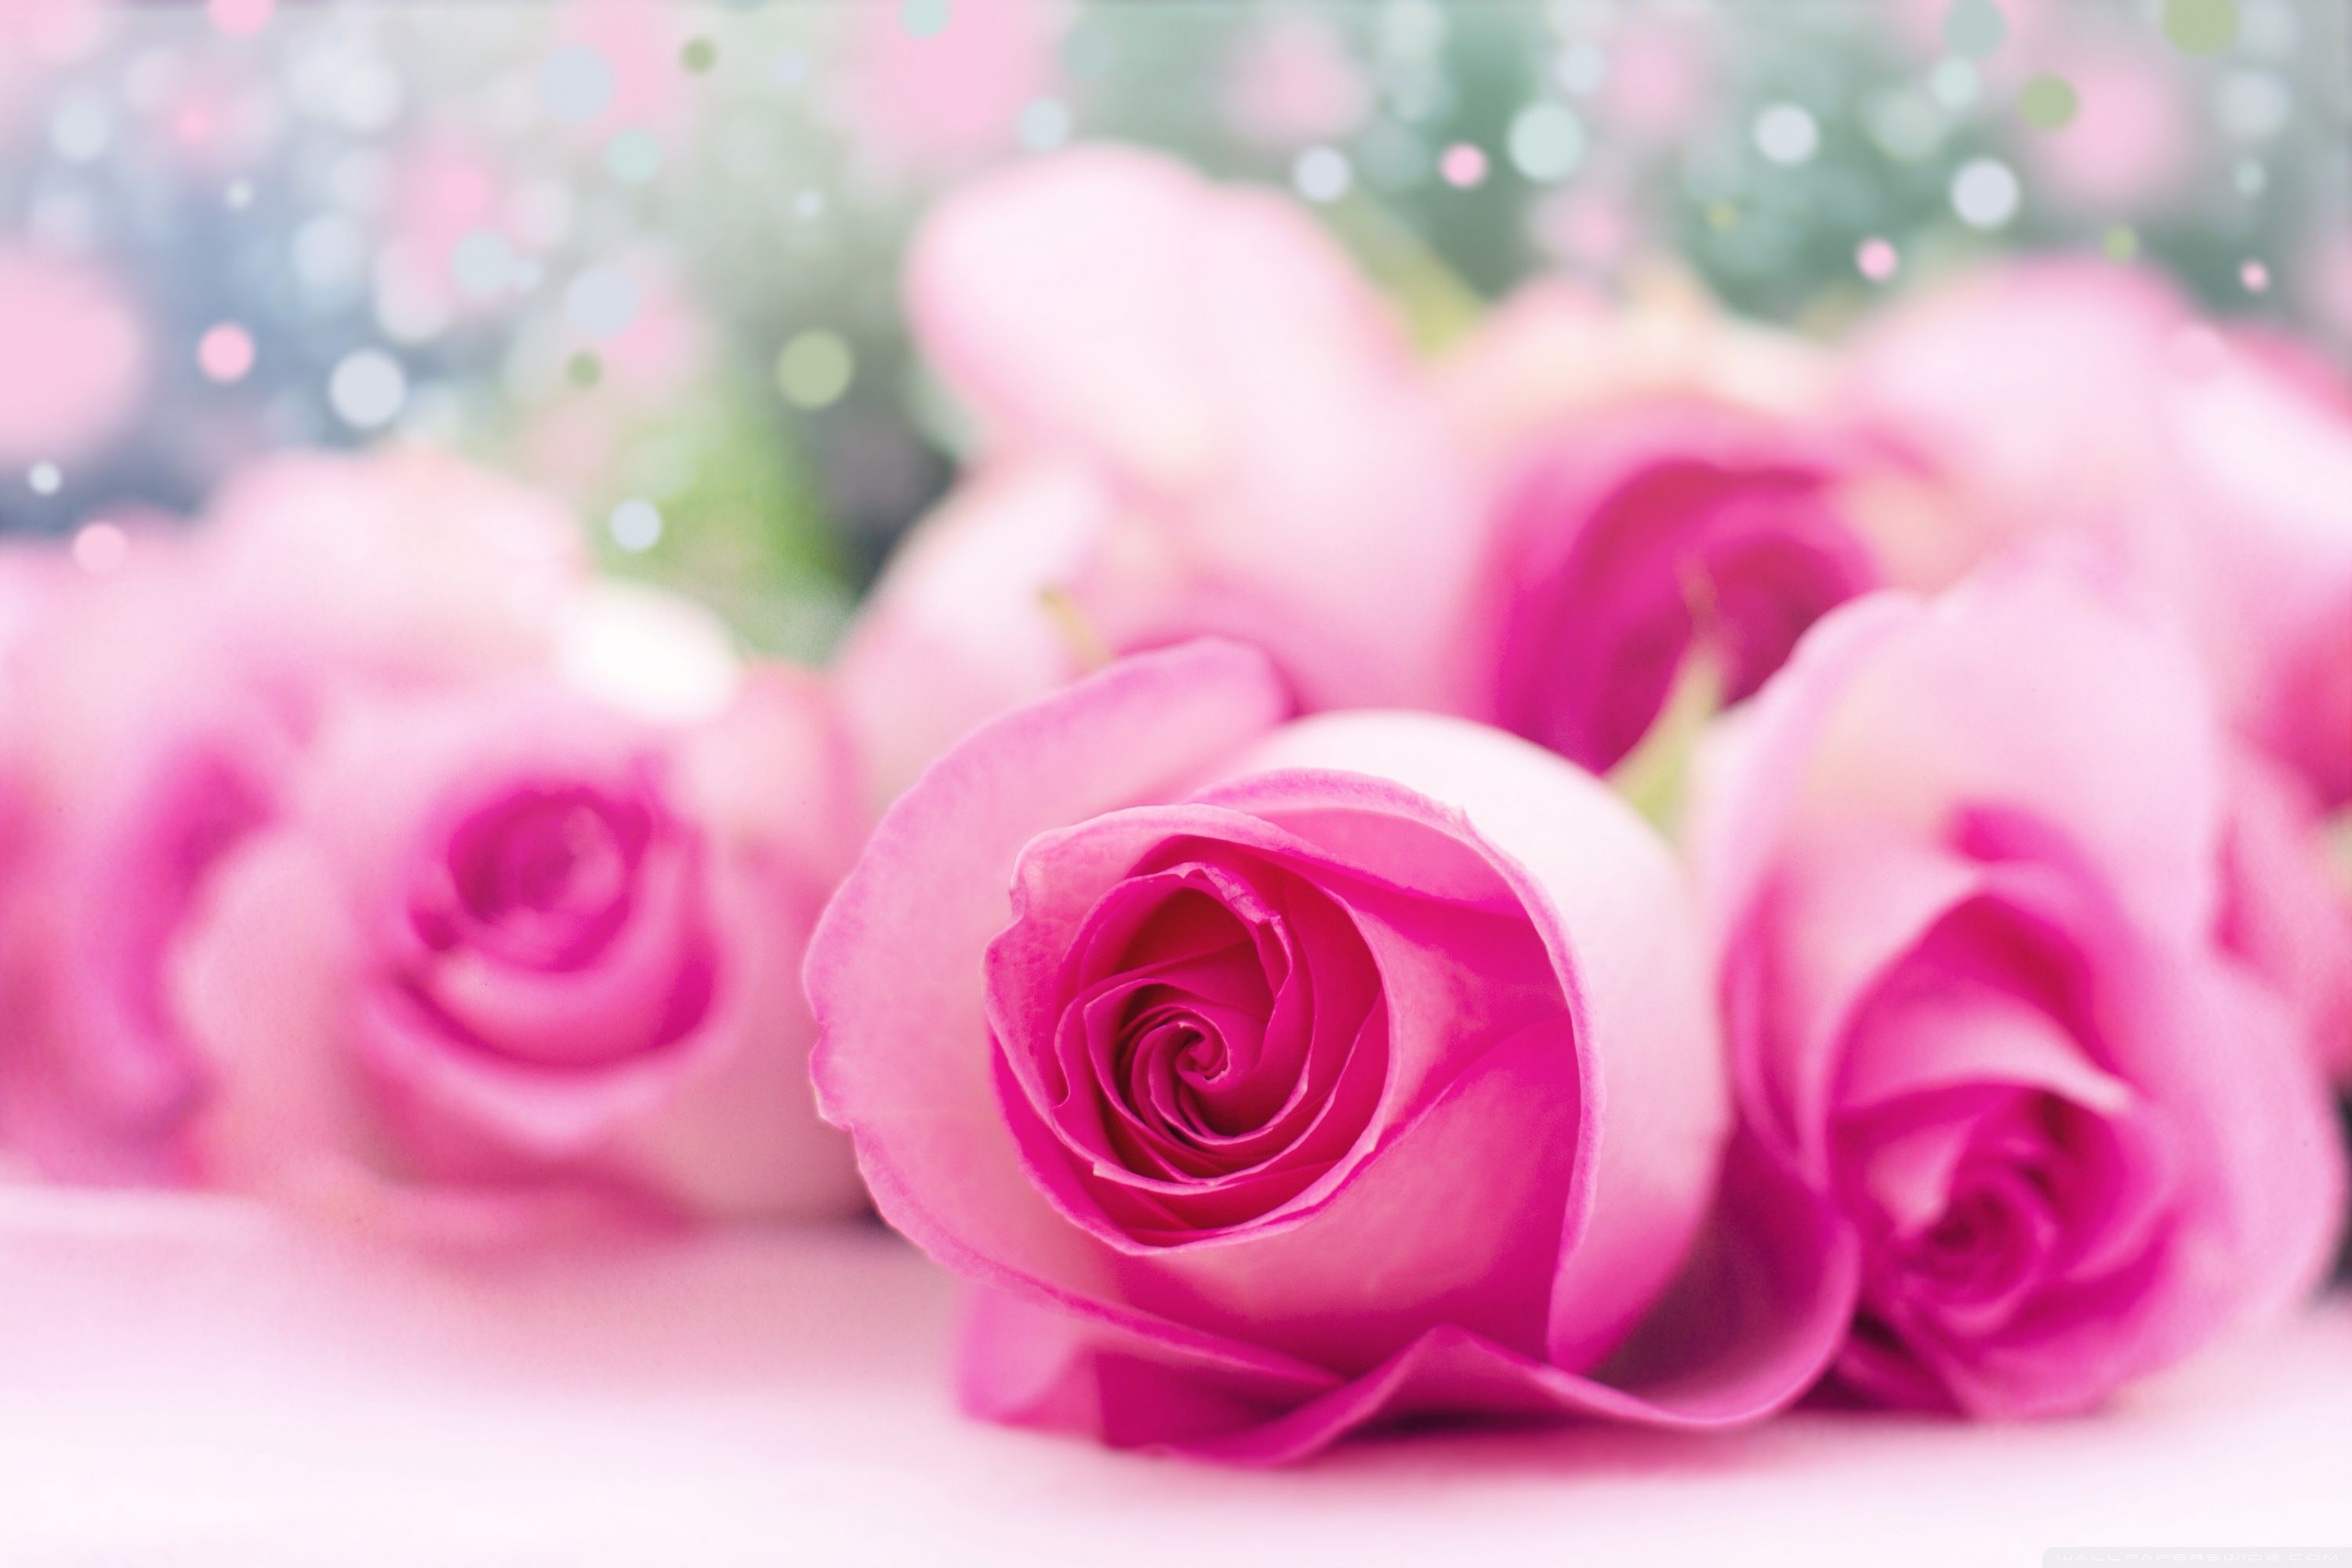 Light Pink Rose: Với sắc hồng nhạt dịu dàng, hoa hồng này tràn đầy sức sống và vẻ đẹp tinh tế. Đón nhận những cảm xúc đầy xúc động và tươi mới khi nhìn thấy hình ảnh này.